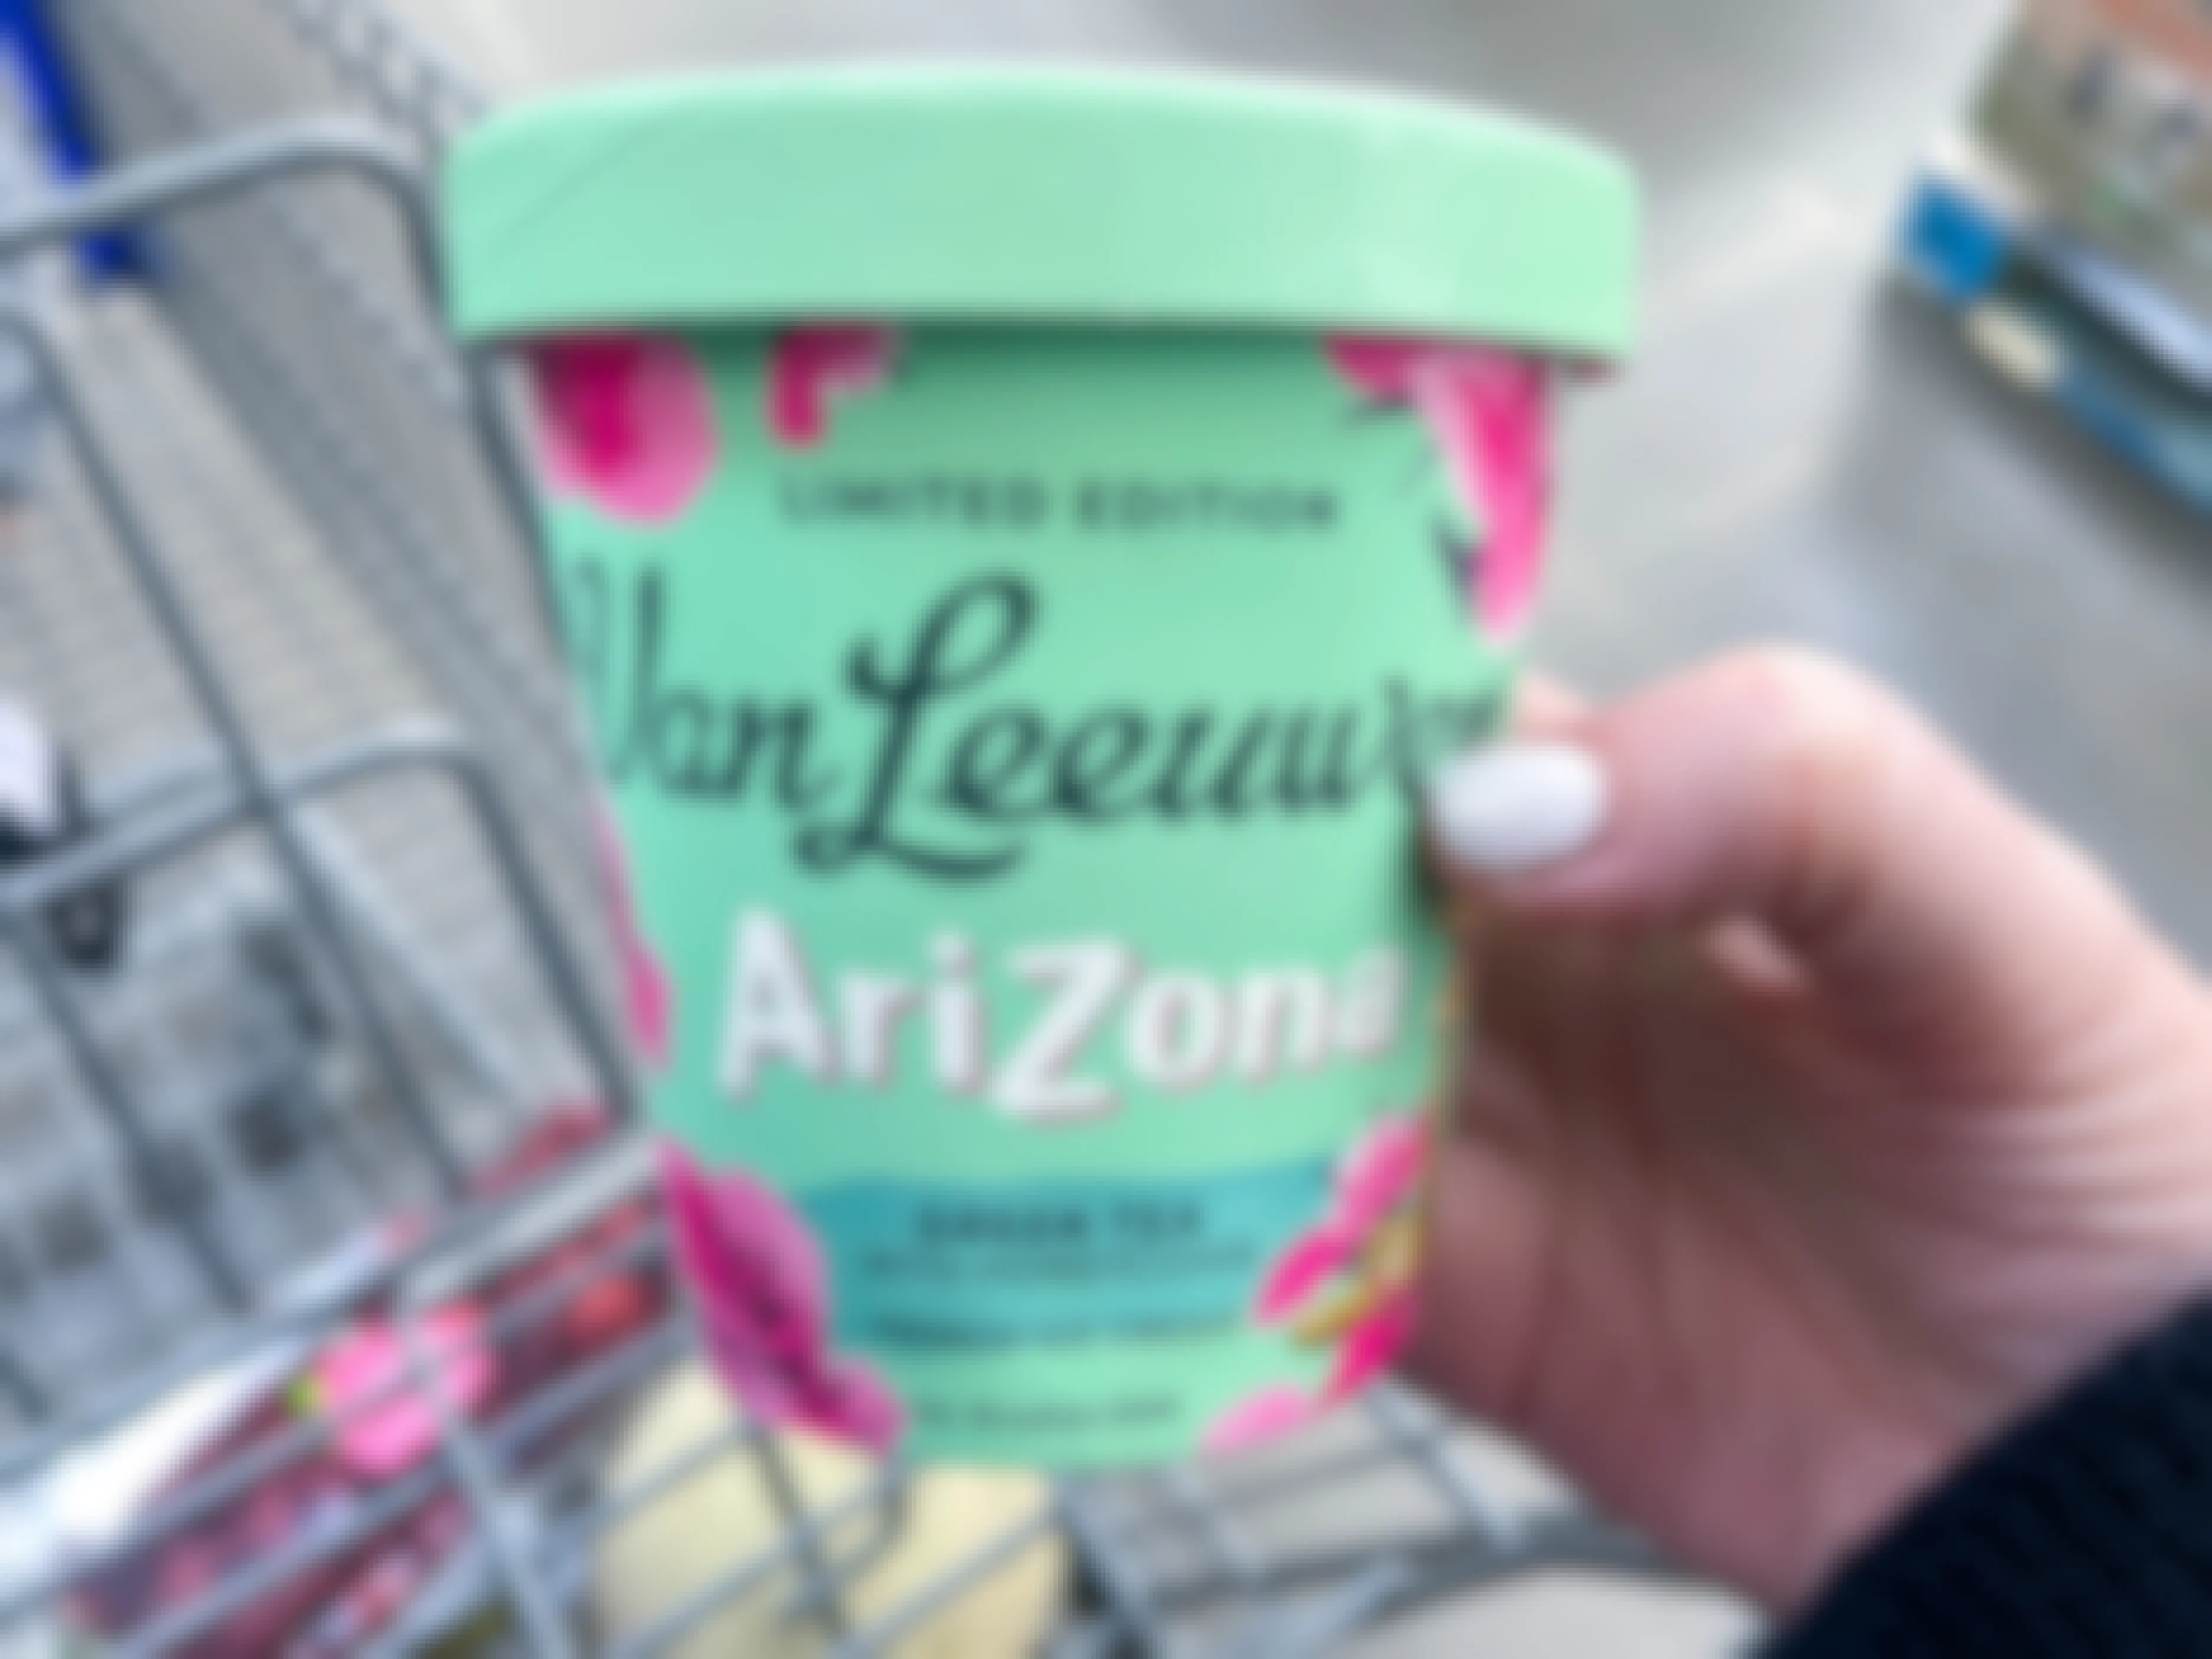 Van Leeuwen Just Released Arizona Green Tea Ice Cream! Get It for $4.98/Pint